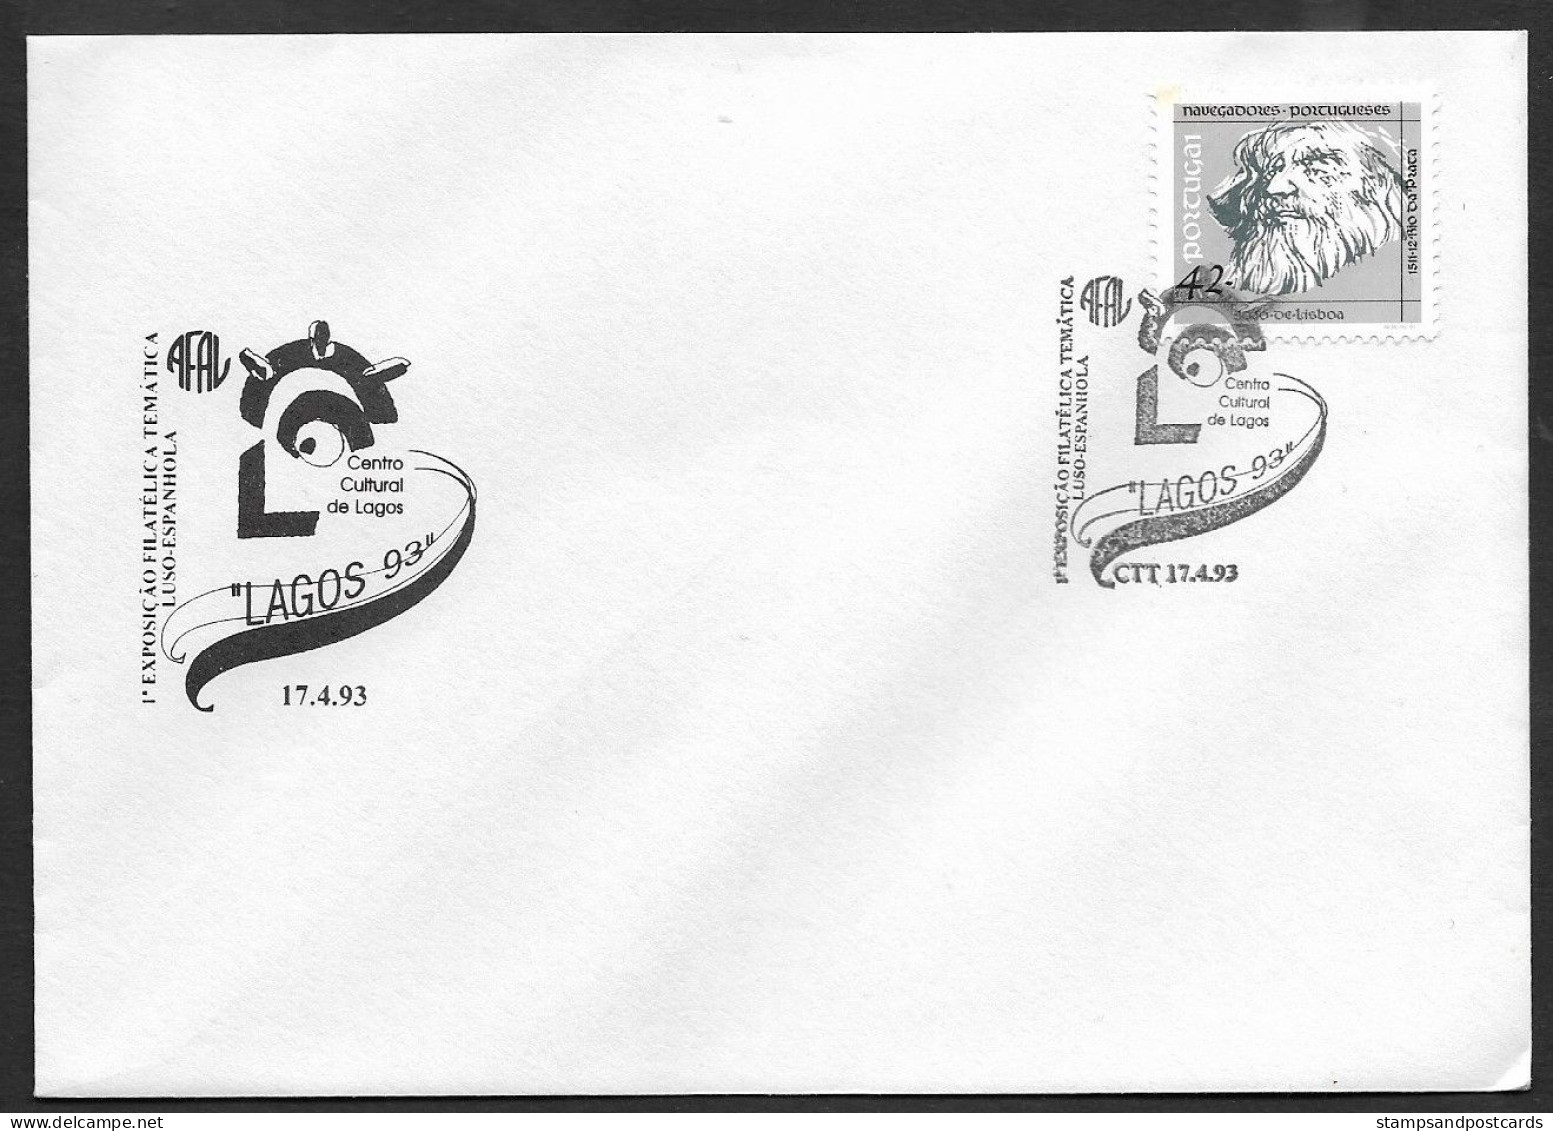 Portugal Lettre Cachet Commemoratif Lagos Algarve Expo Philatelique 1993 Event Cancel Cover Stamp Expo - Maschinenstempel (Werbestempel)